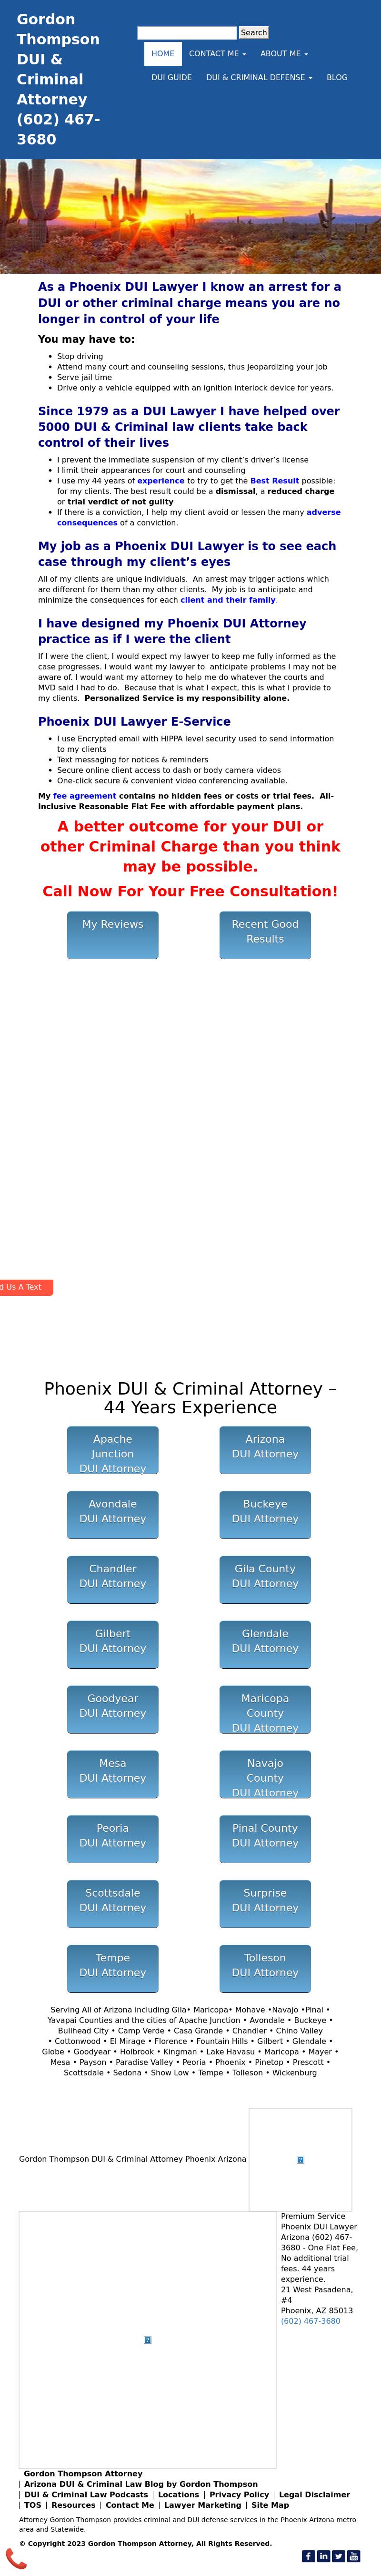 Gordon Thompson Attorney - Phoenix AZ Lawyers